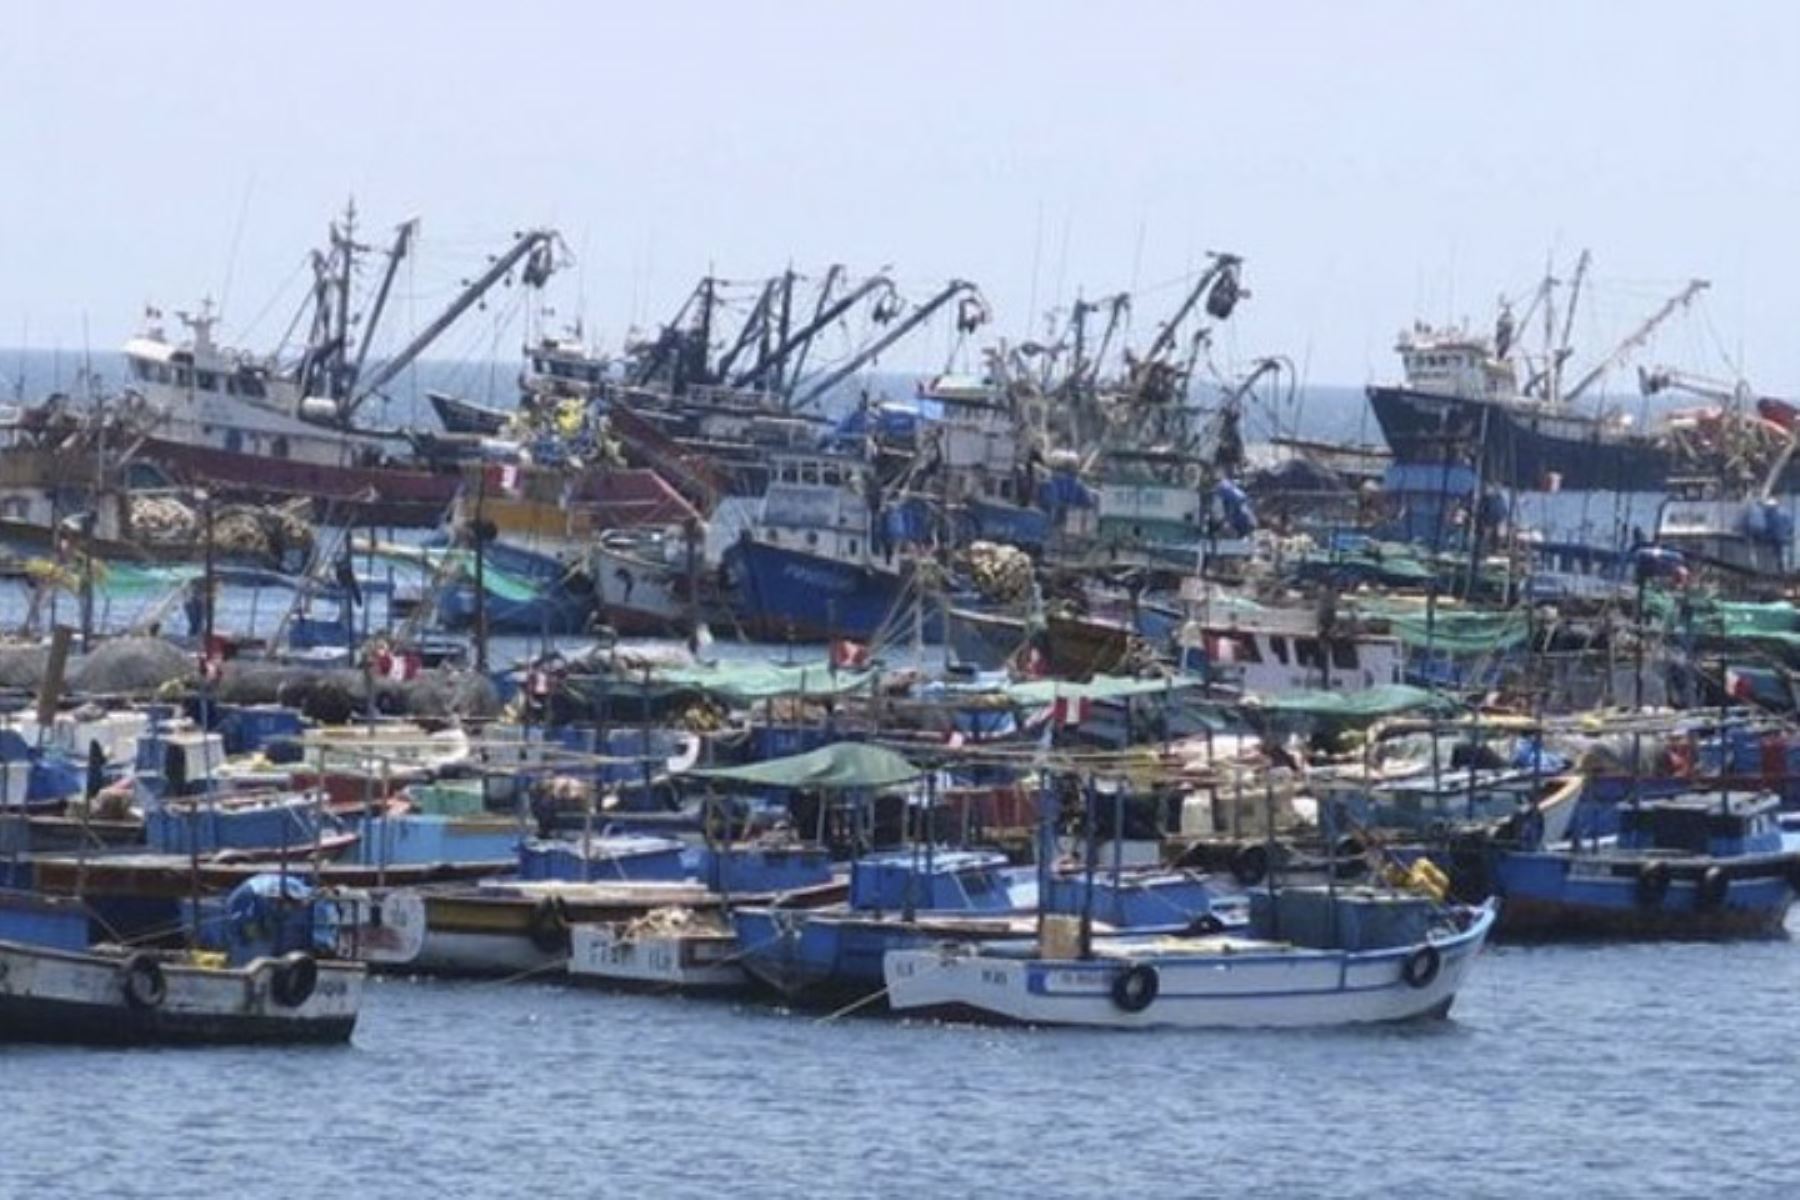 El Indeci recomienda suspender las actividades portuarias y de pesca, así como asegurar las embarcaciones o retirar las flotas pequeñas hacia tierra firme. Foto: ANDINA/archivo